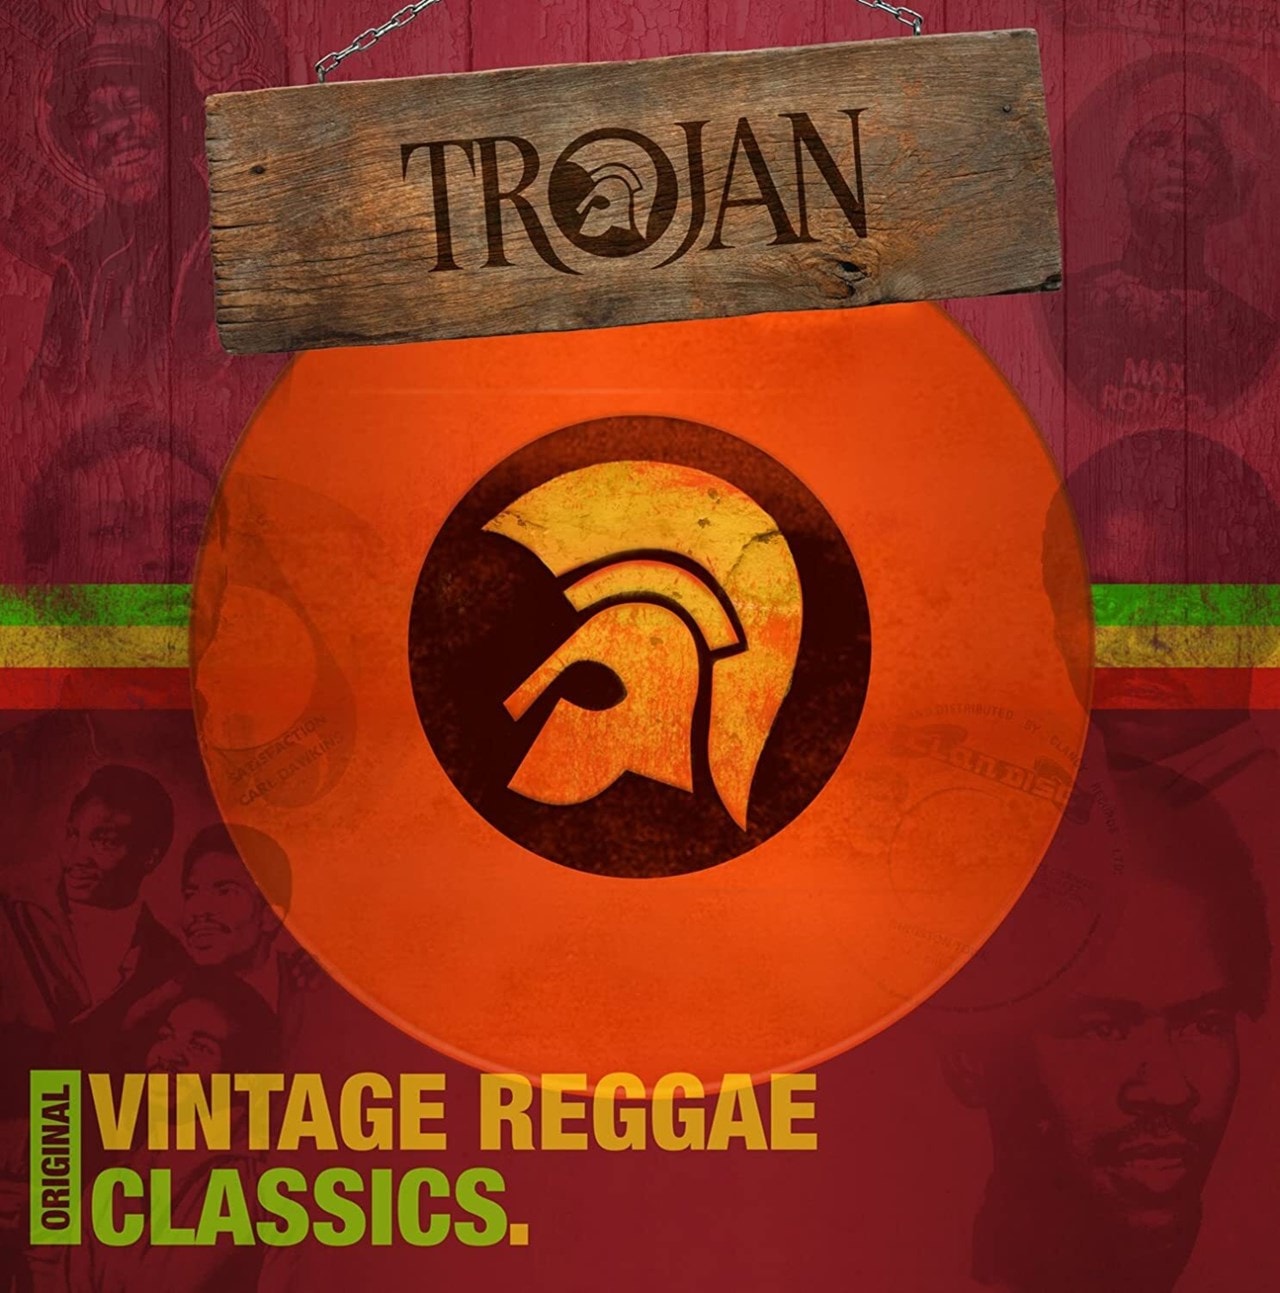 Original Vintage Reggae Classics Vinyl 12 Album Free Shipping Over £20 Hmv Store